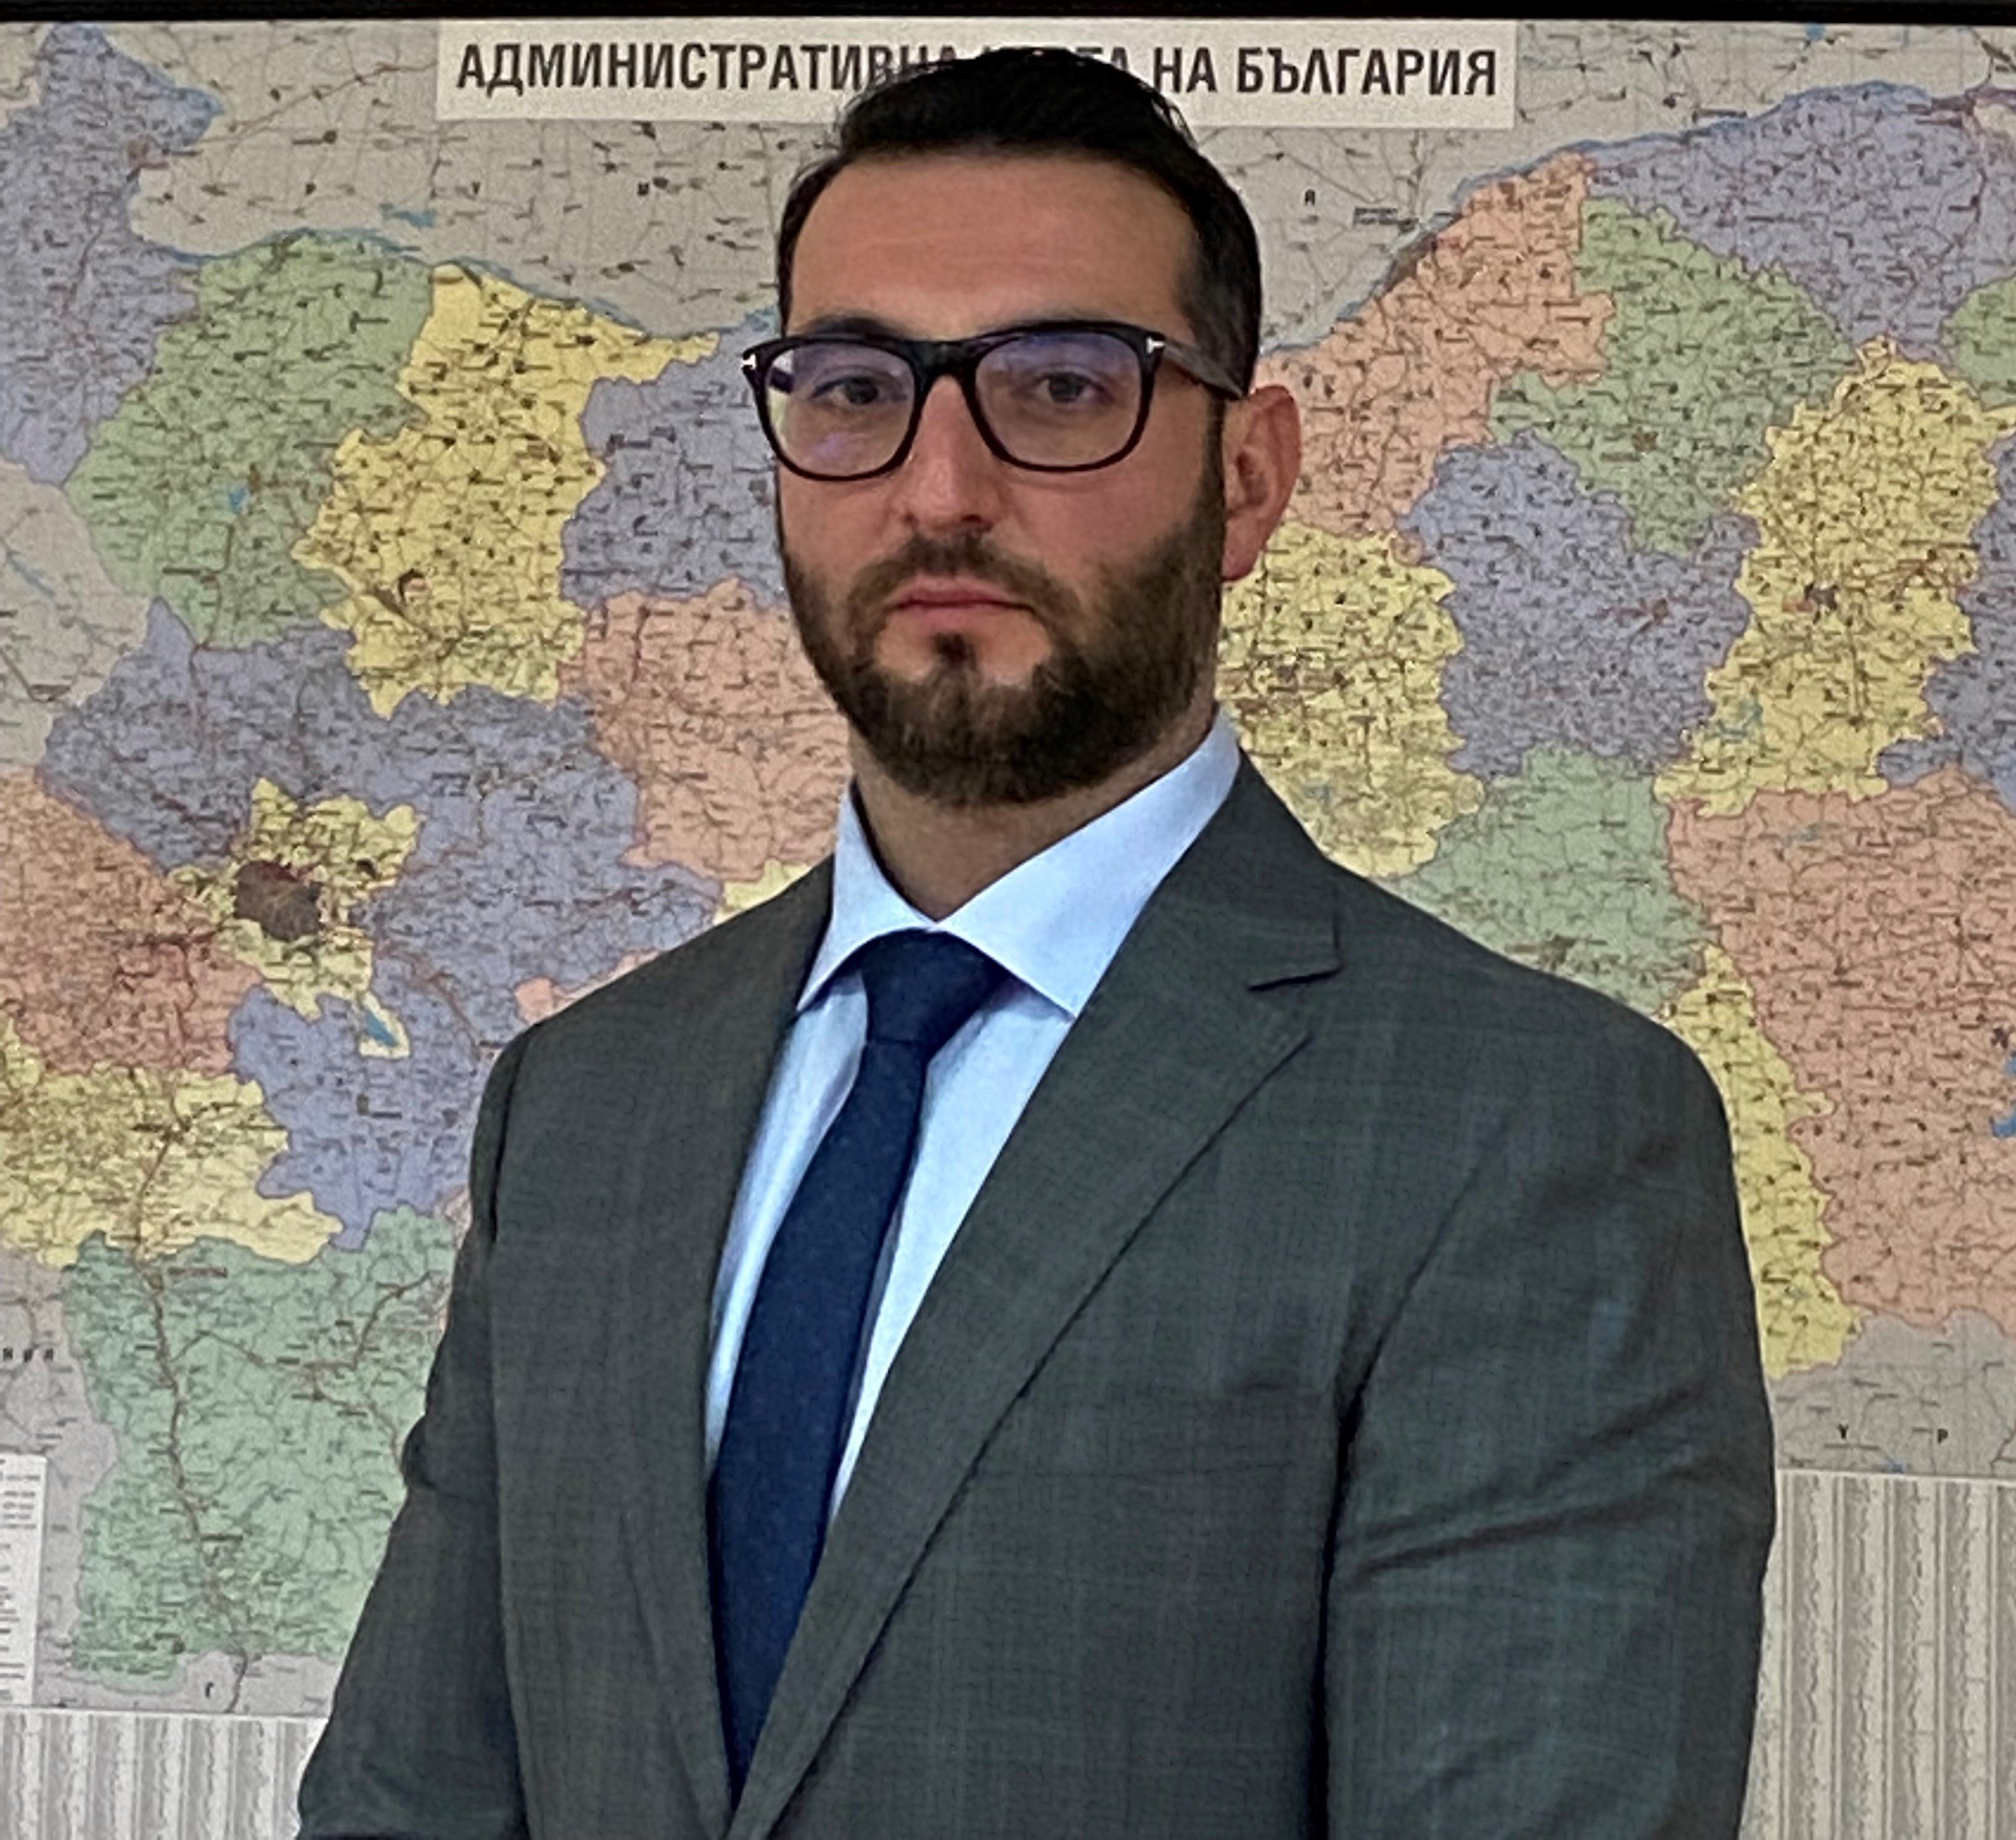 Тодор Василев е новият председател на Управителния съвет на Агенция